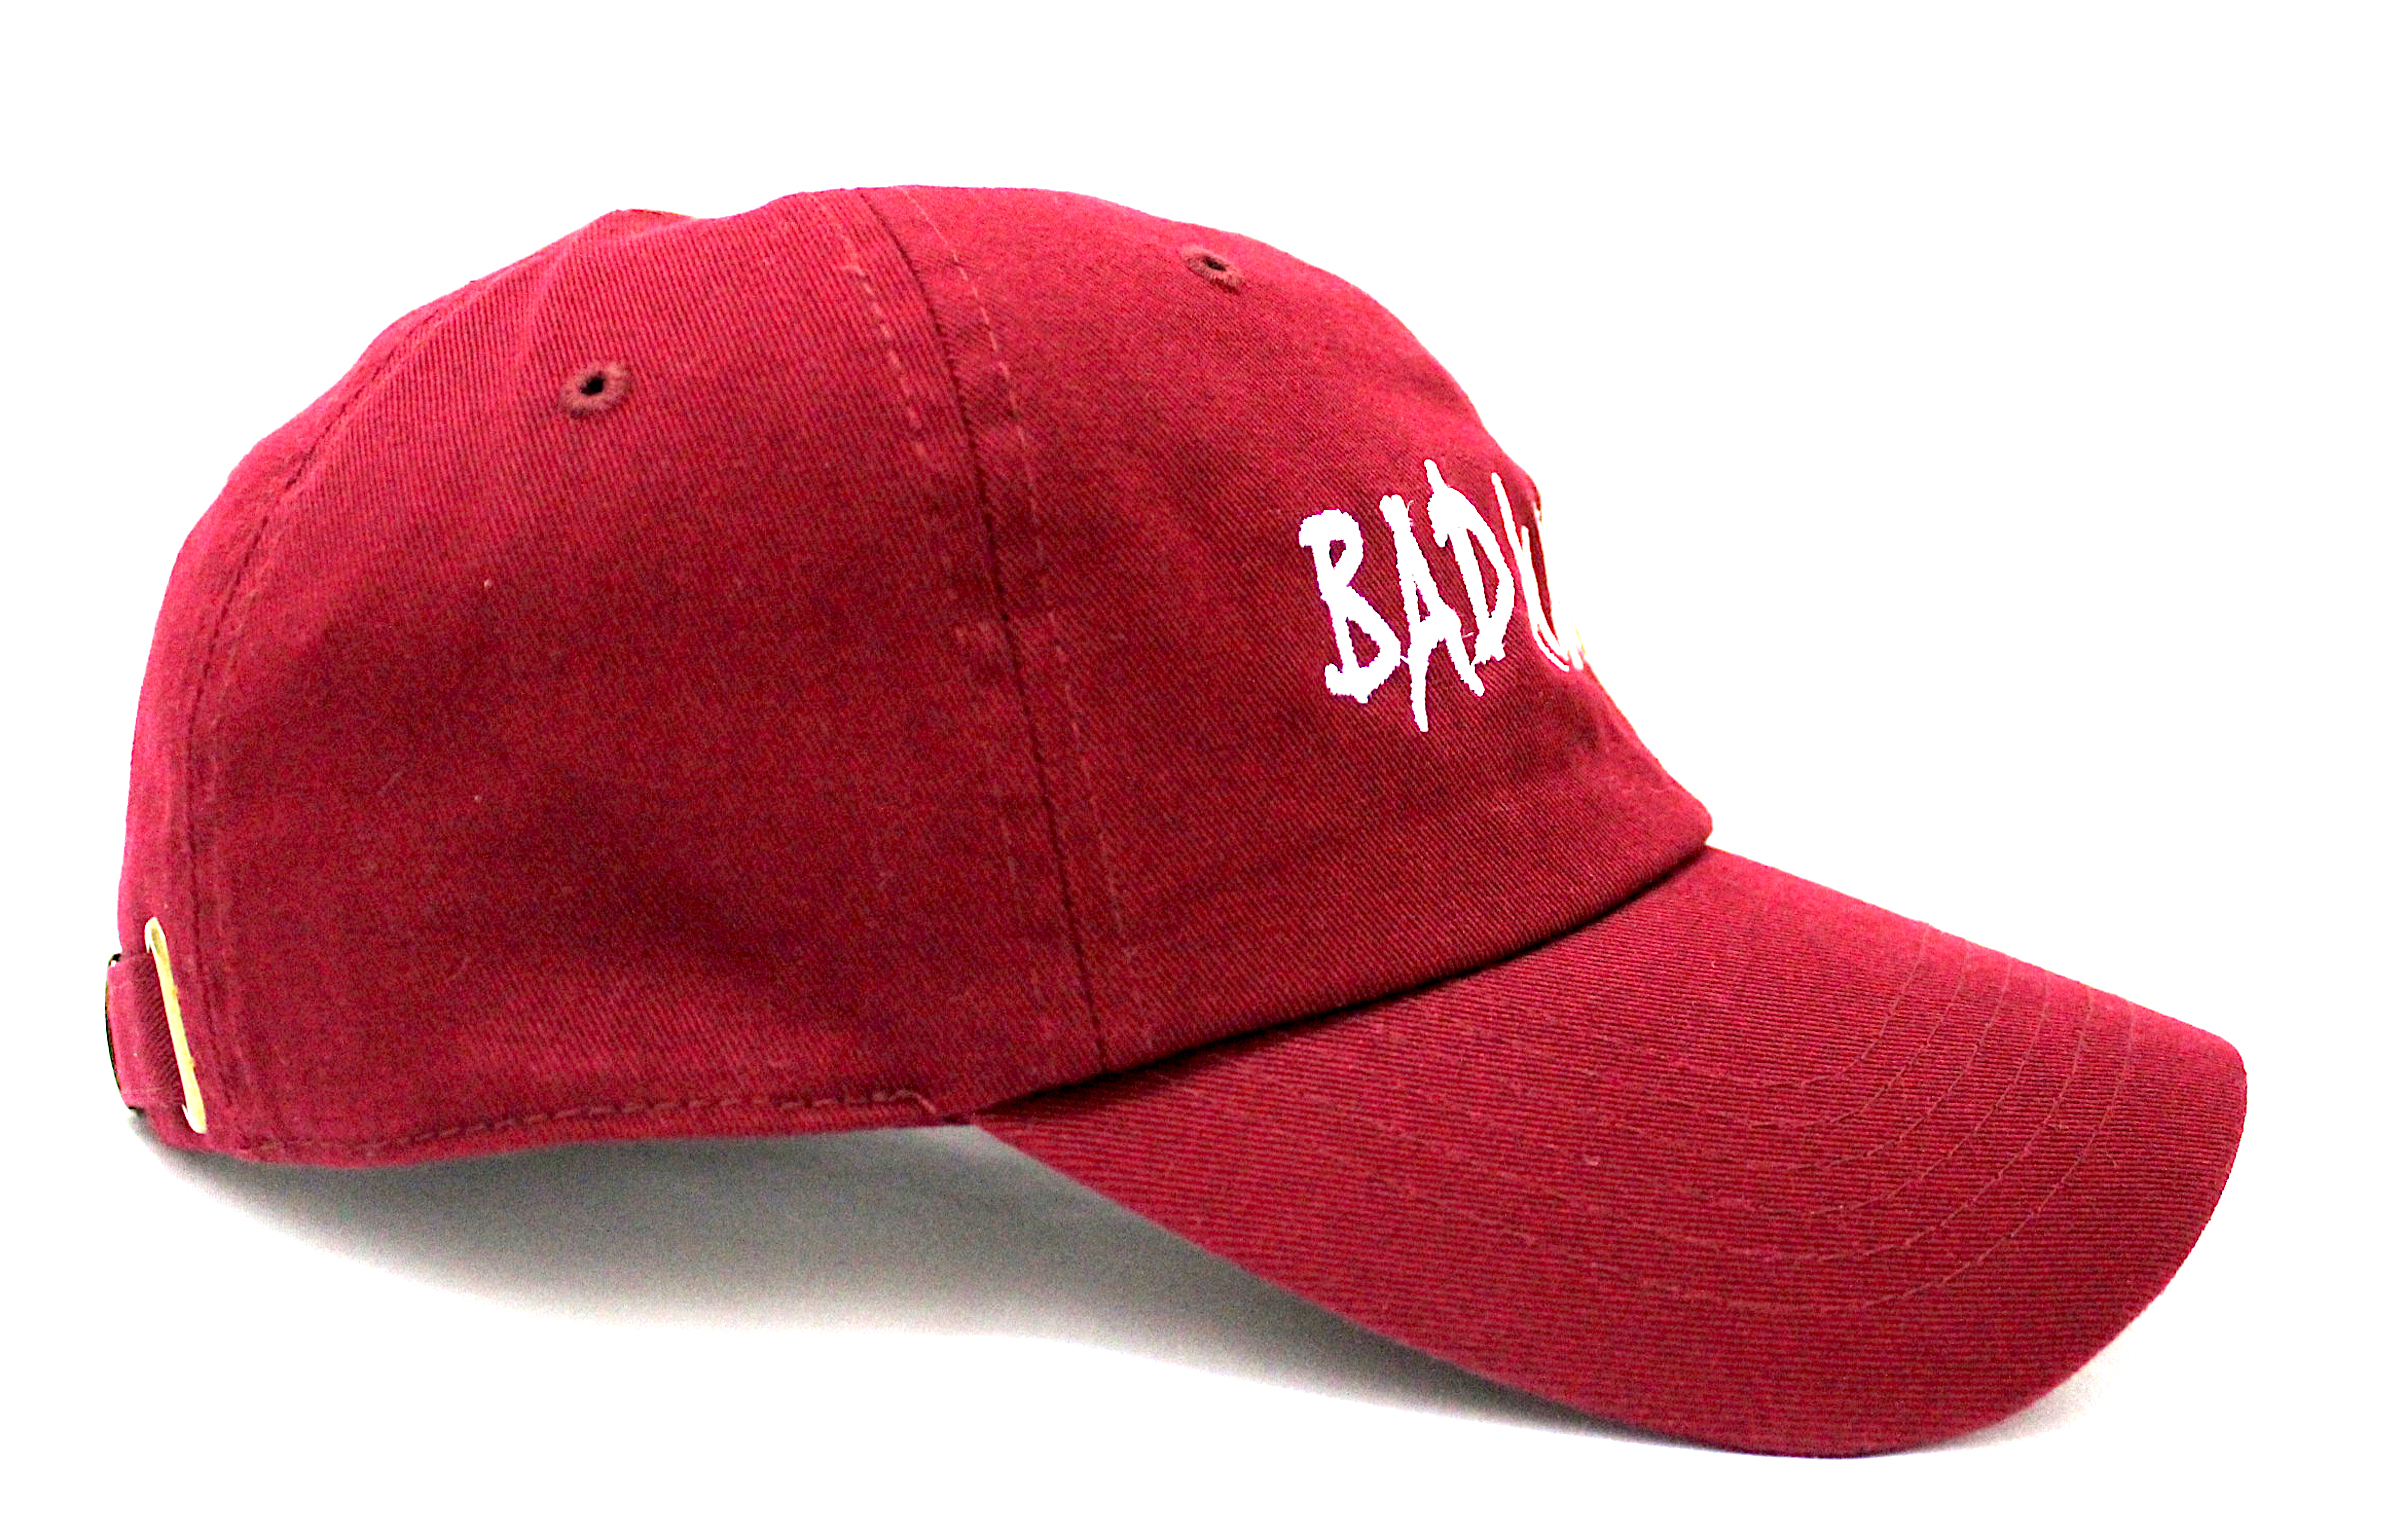 BAD BURG DAD CAP - Click Image to Close